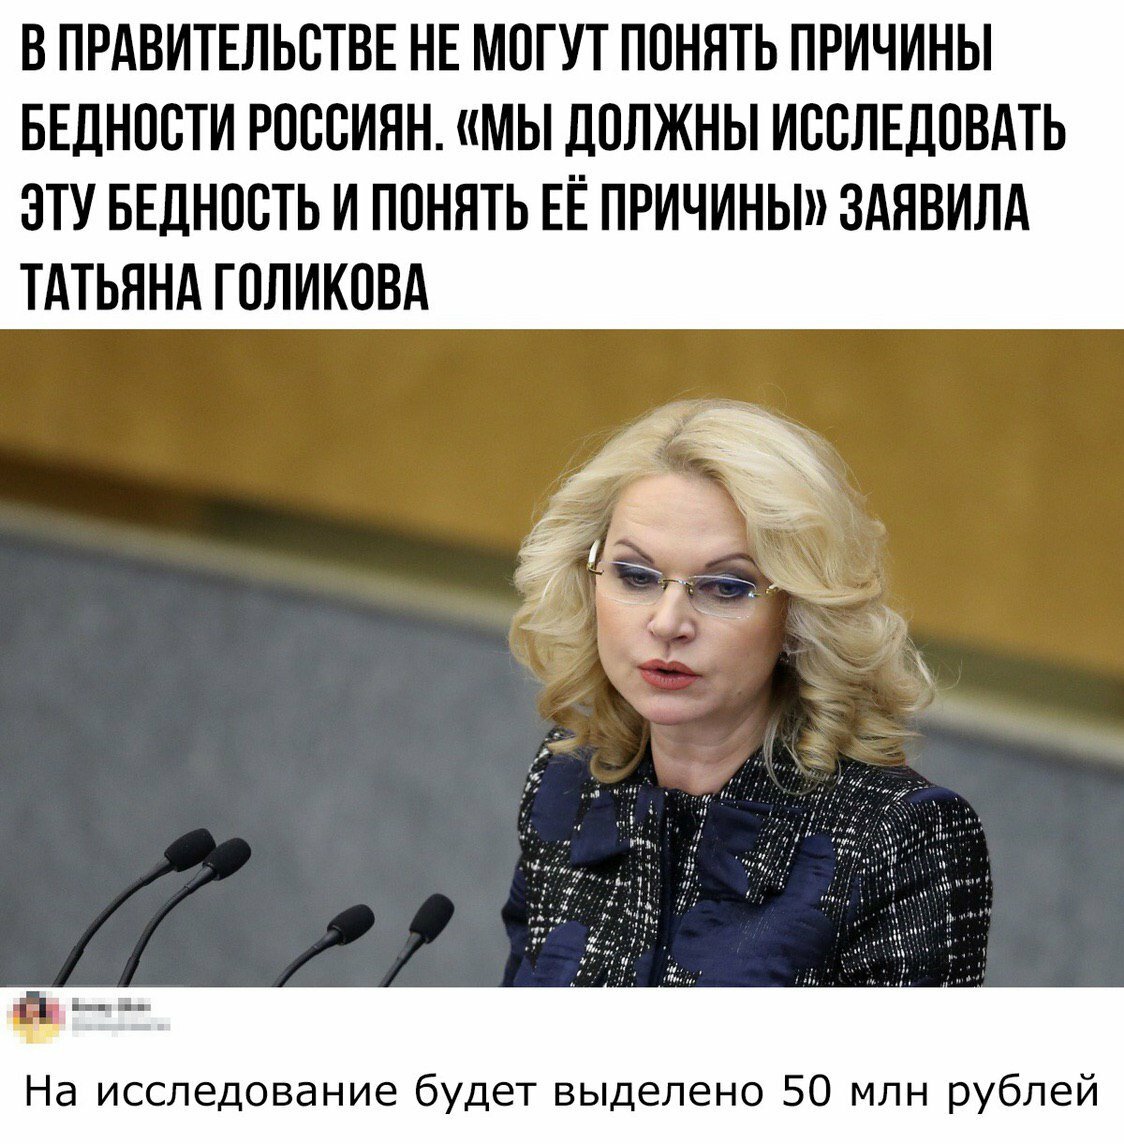 Госпожа Голикова: “Издревле на Руси в центре больниц располагался храм”